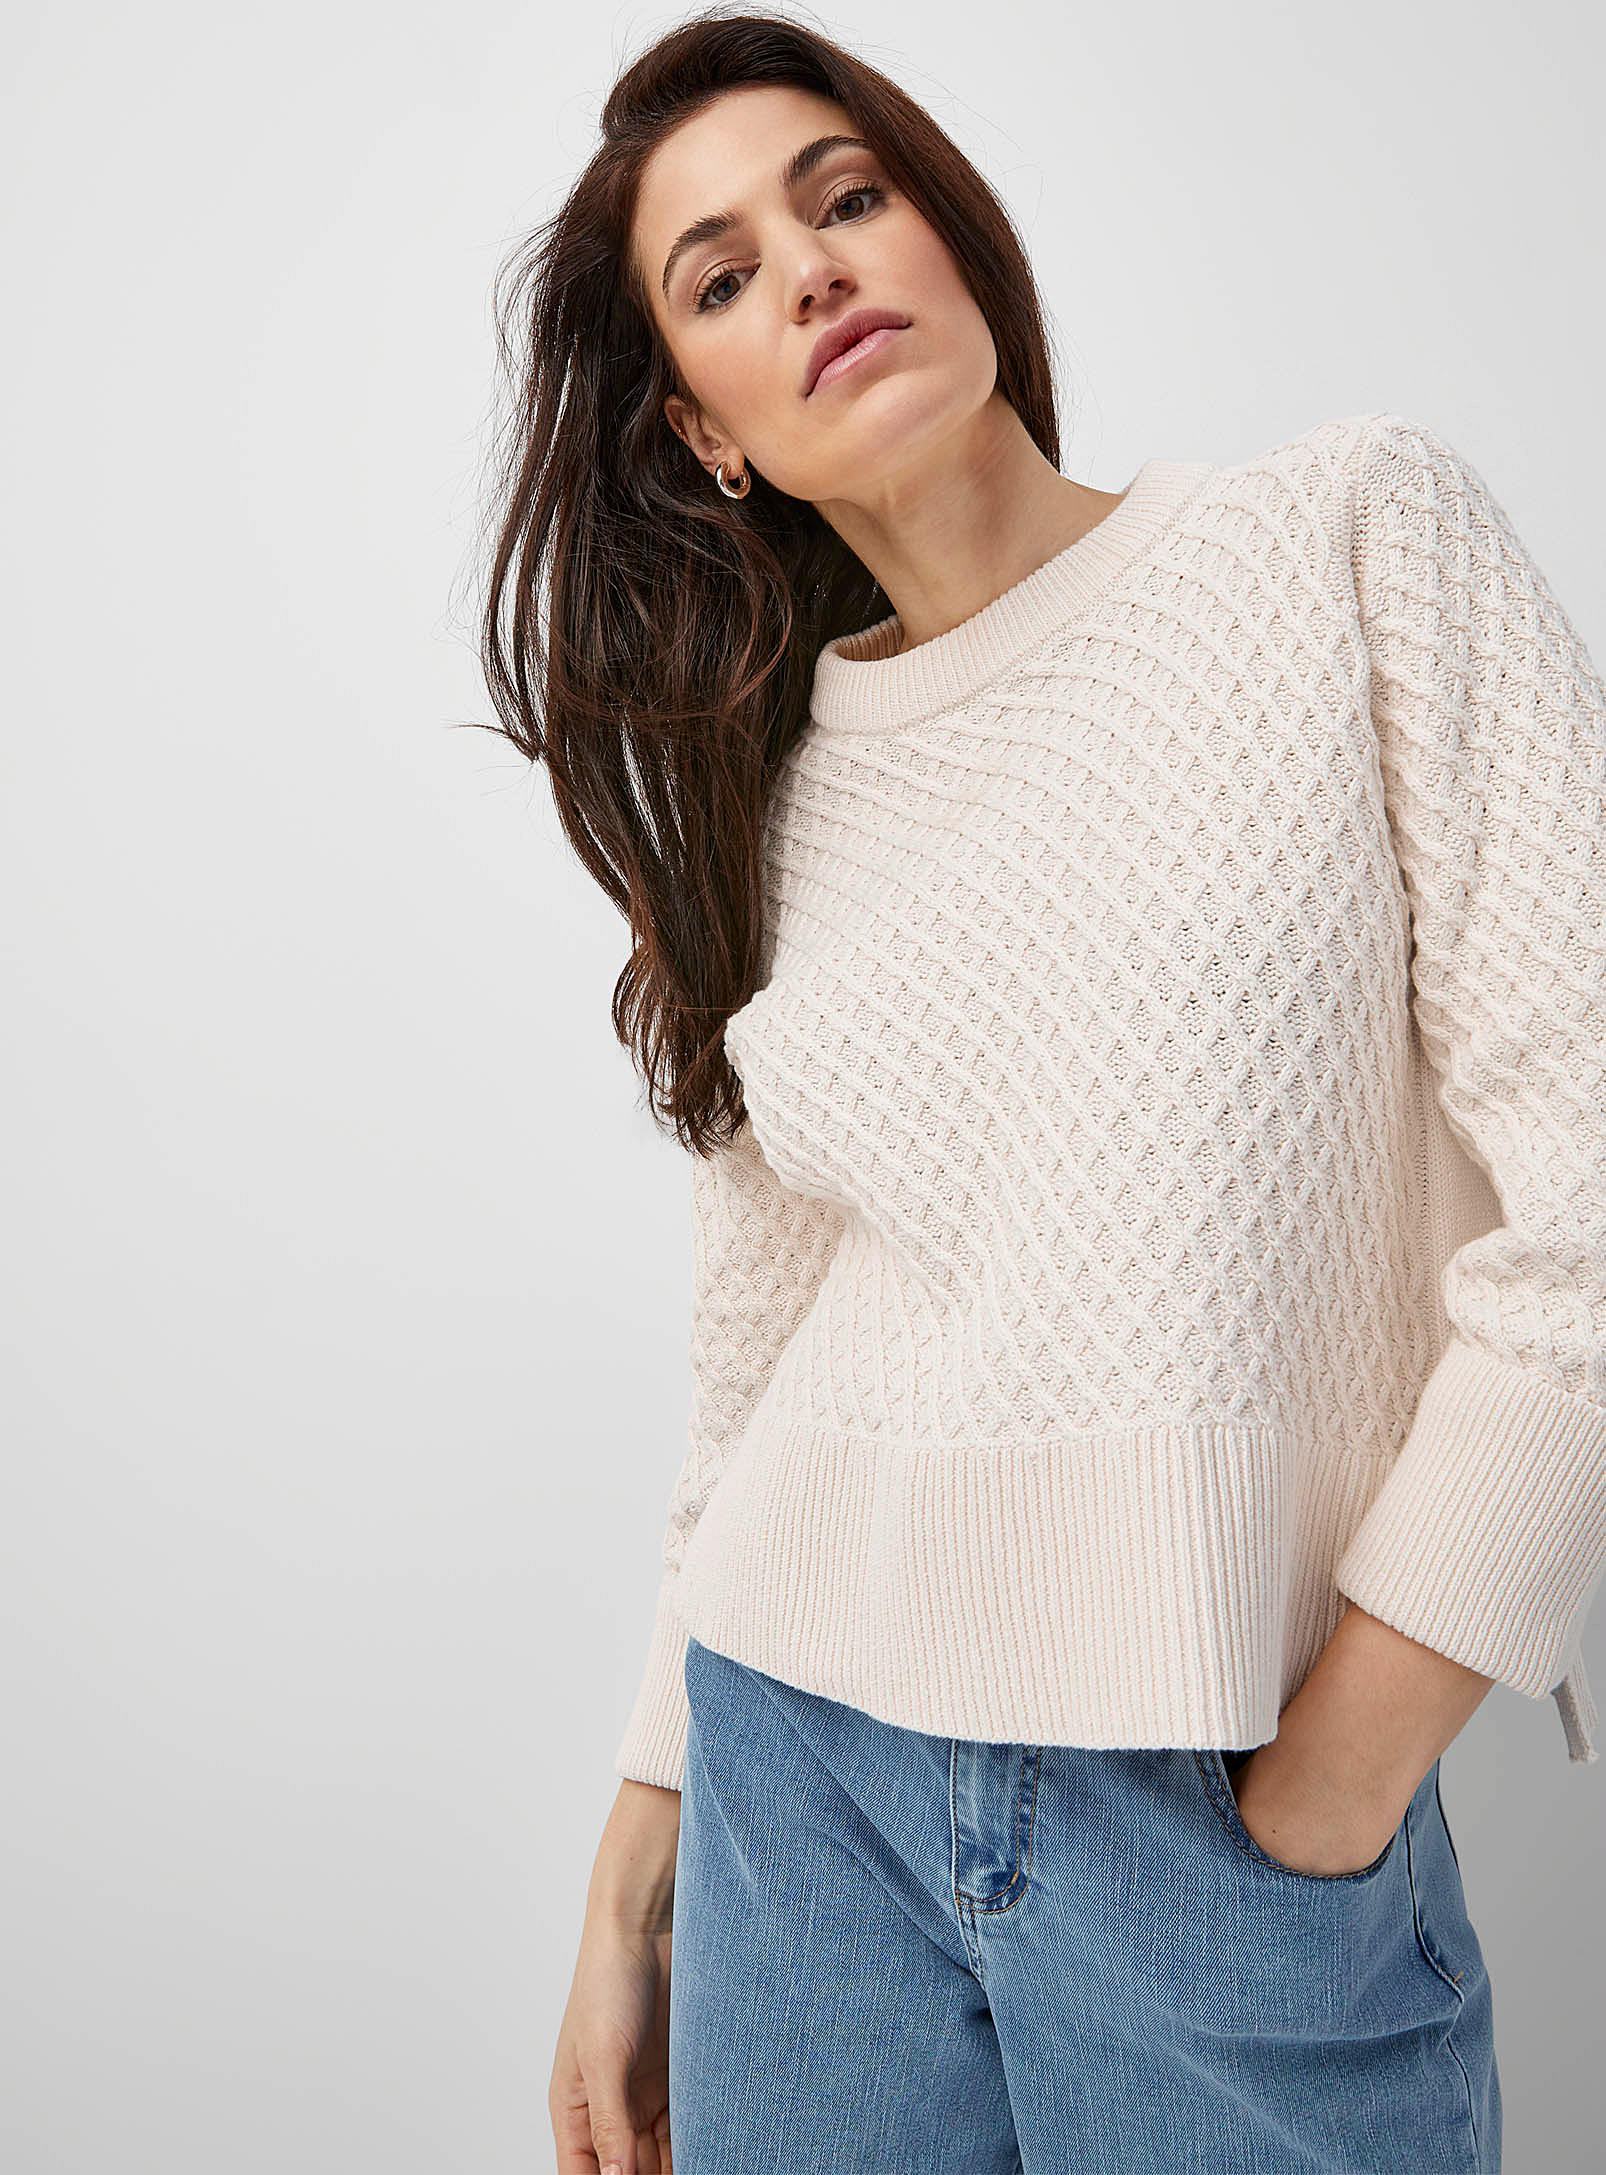 Fransa Latticework Knit Sweater In Ivory White